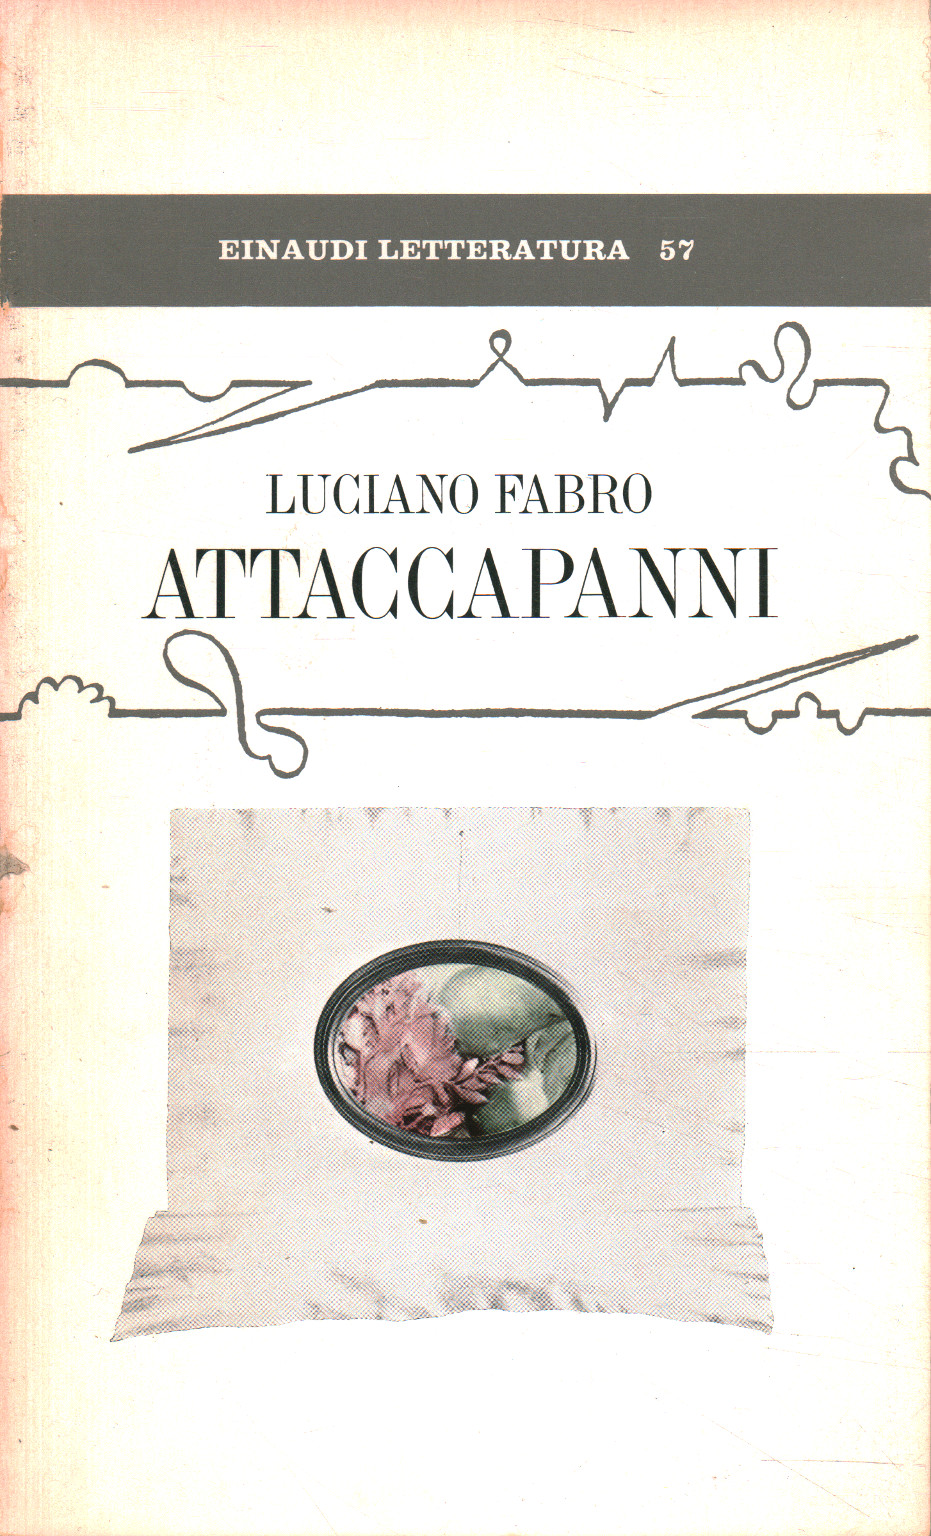 Portemanteau, Luciano Fabro